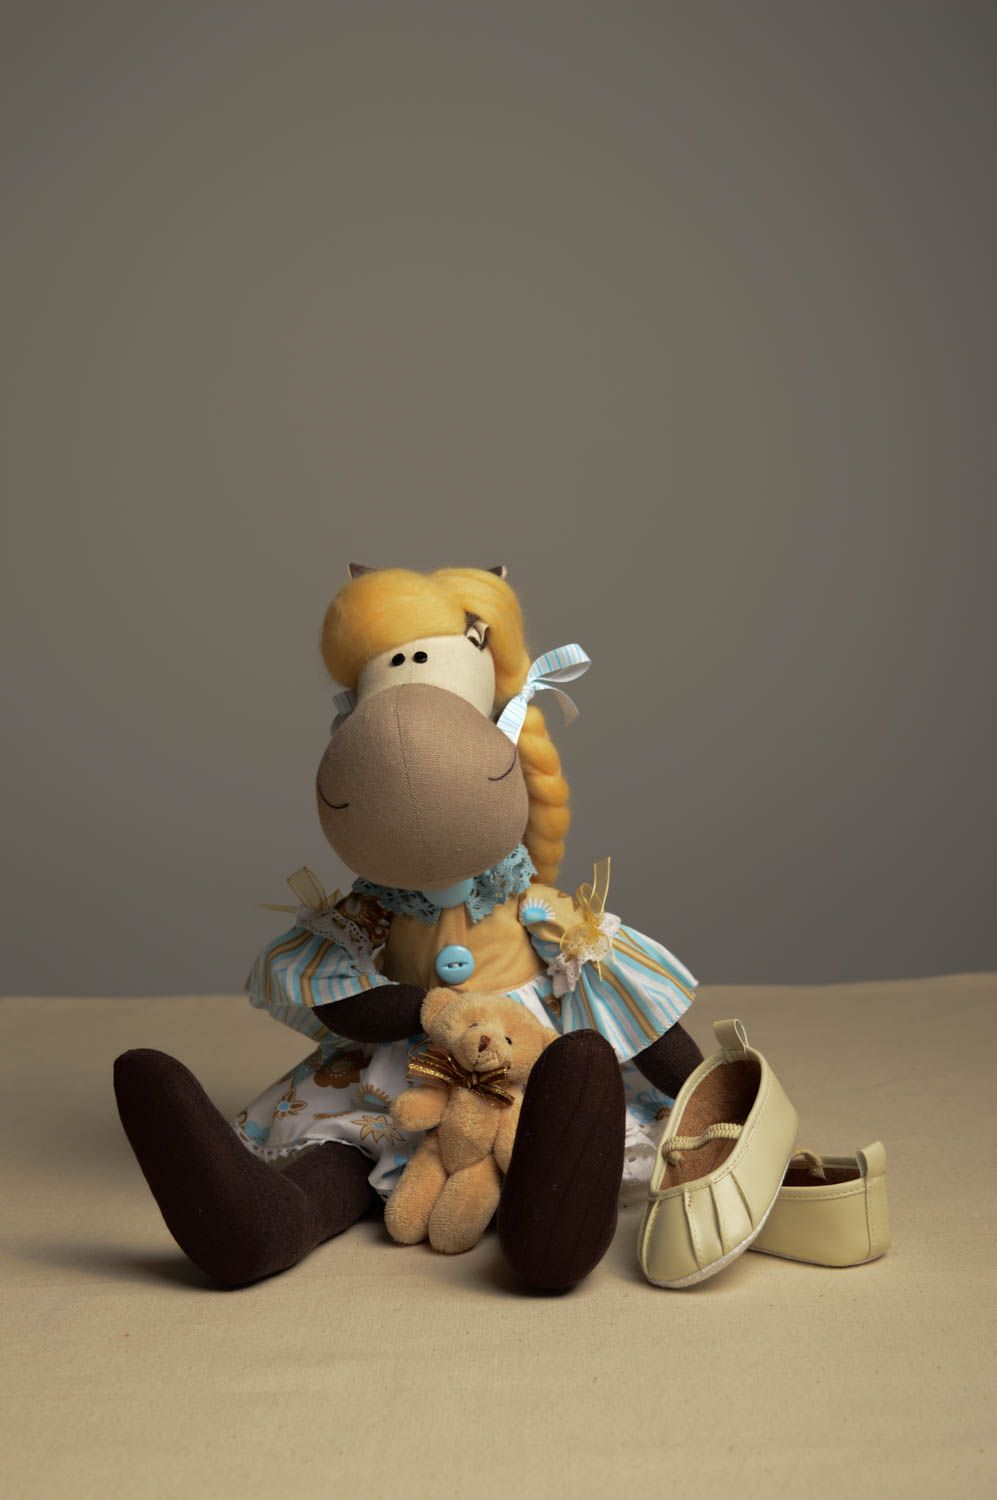 Игрушка лошадка ручной работы детская игрушка кукла из льна мягкая игрушка фото 1